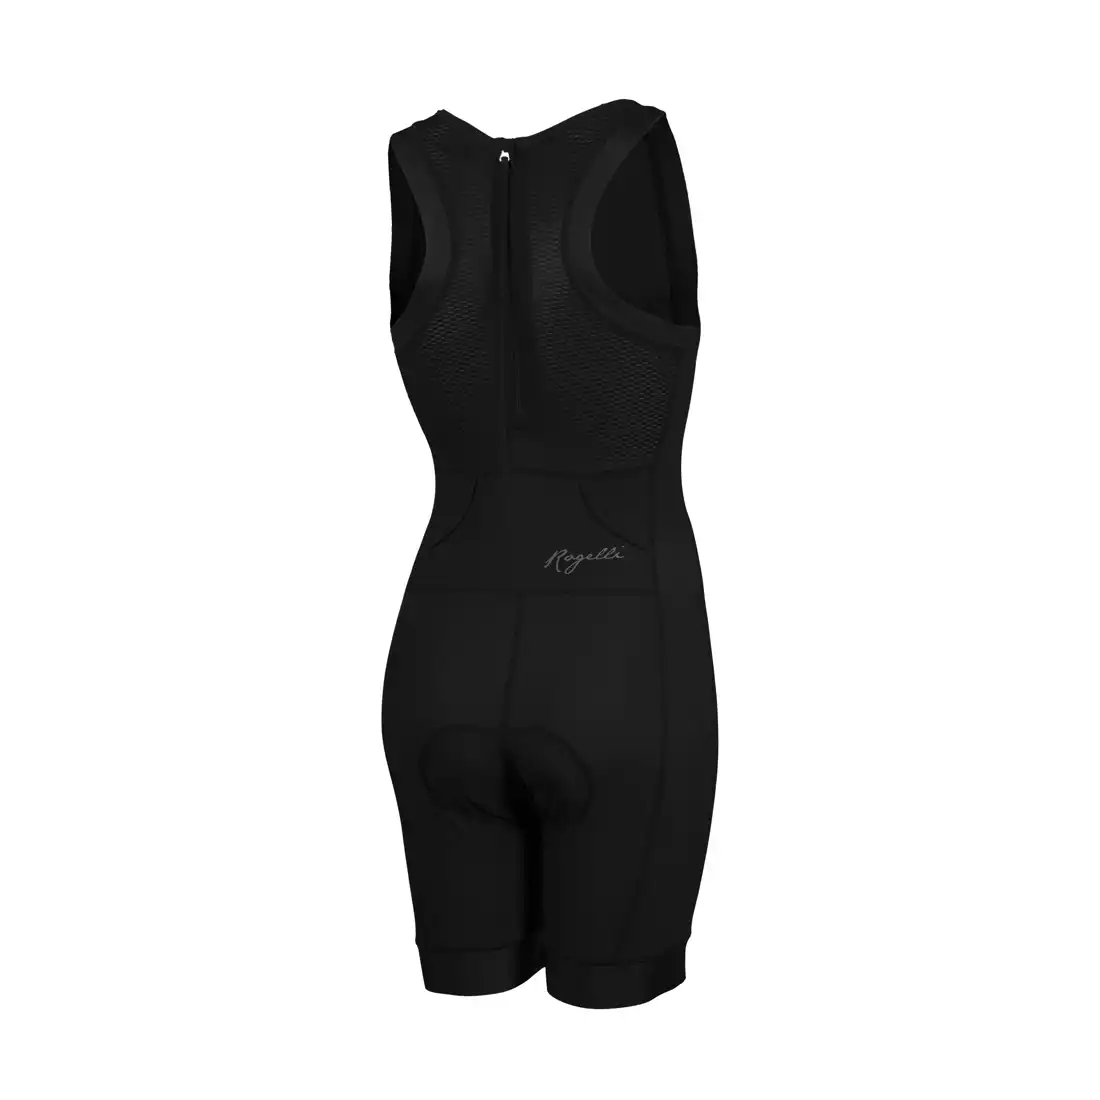 ROGELLI TAUPO 030.007 damski strój triathlonowy, czarny